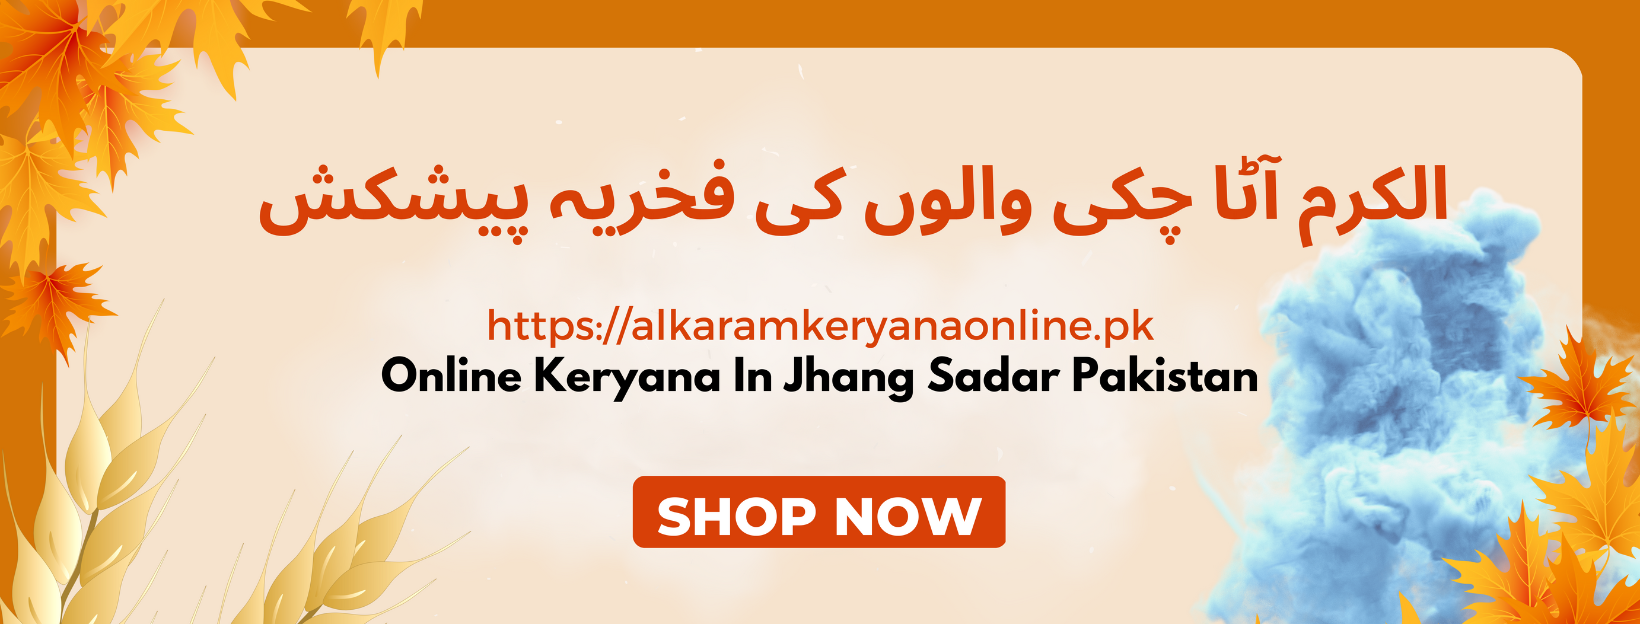 alkaram banner